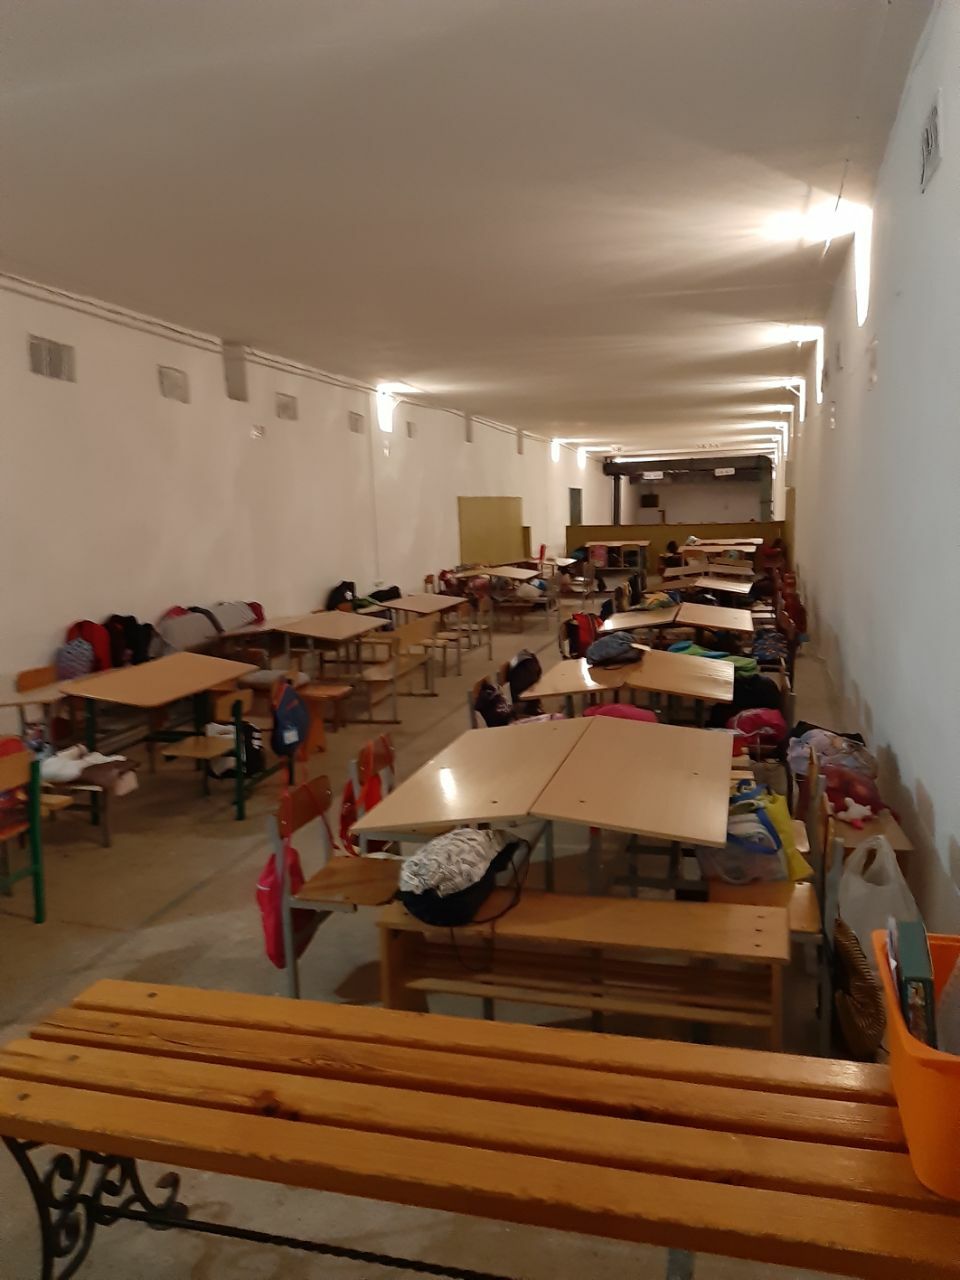 Schulunterricht im Schutzbunker: Schulbänke und Notfallpakete an jedem Platz